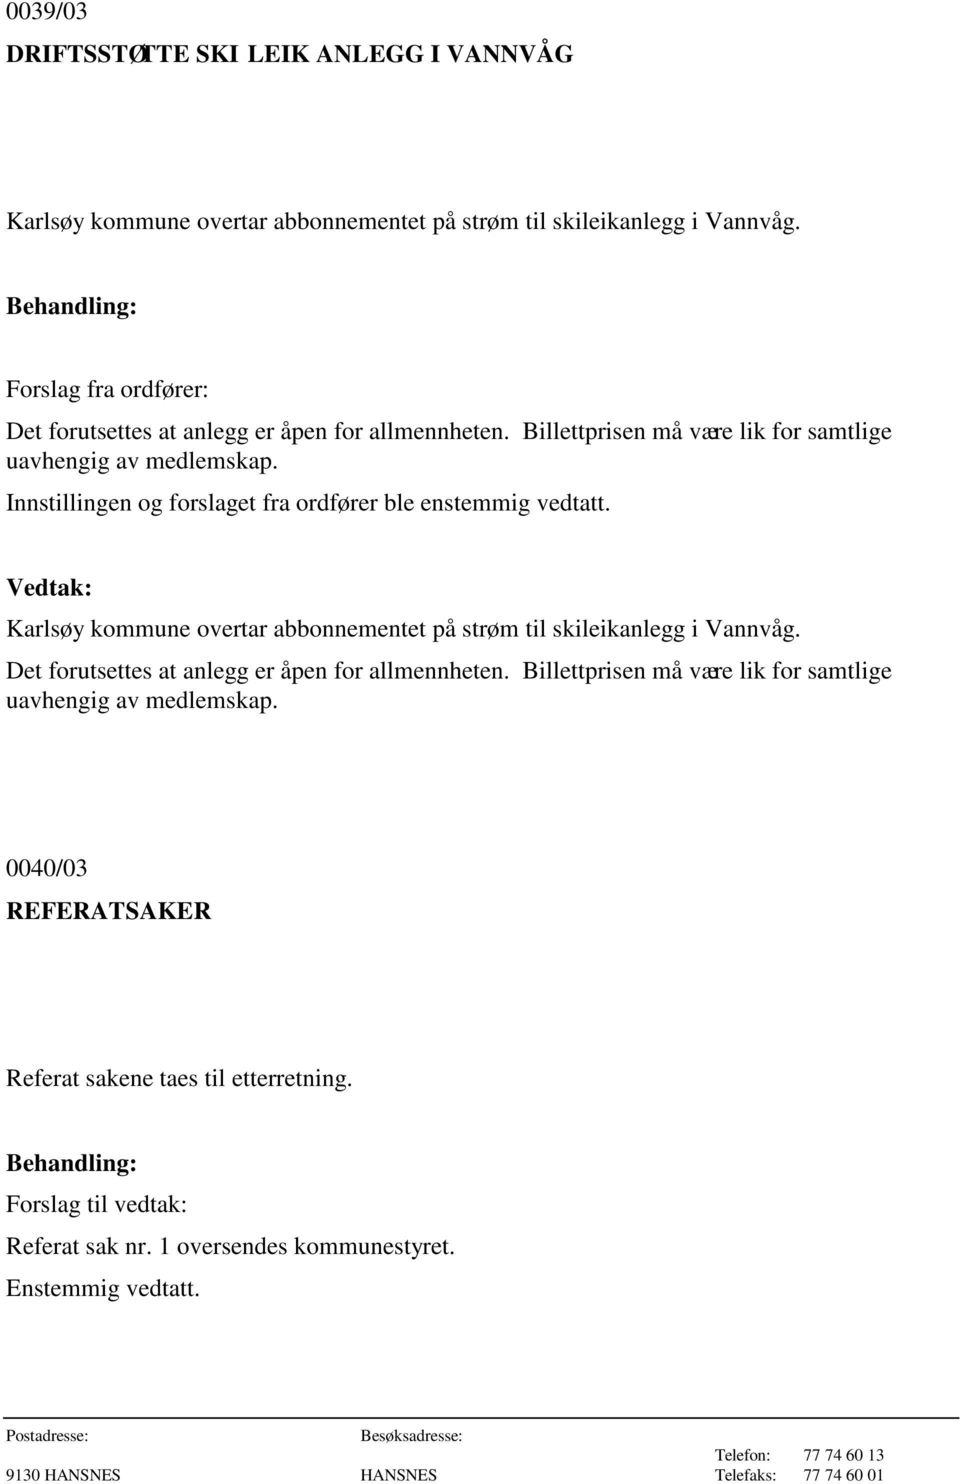 Innstillingen og forslaget fra ordfører ble enstemmig vedtatt. Karlsøy kommune overtar abbonnementet på strøm til skileikanlegg i Vannvåg.